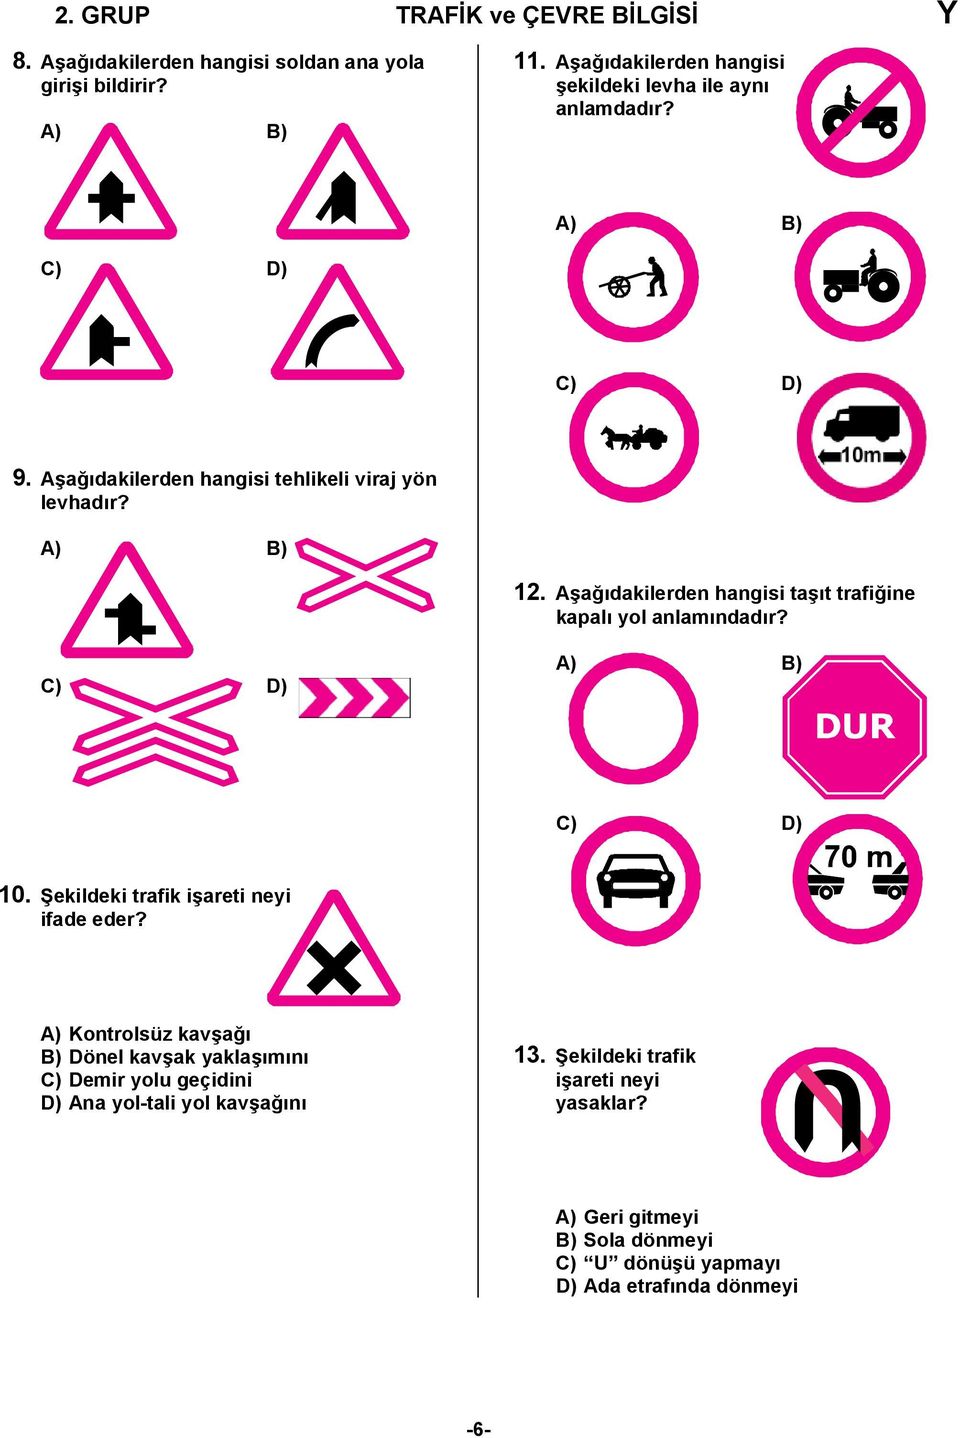 Aşağıdakilerden hangisi taşıt trafiğine kapalı yol anlamındadır? C) D) A) B) C) D) 10. Şekildeki trafik işareti neyi ifade eder?